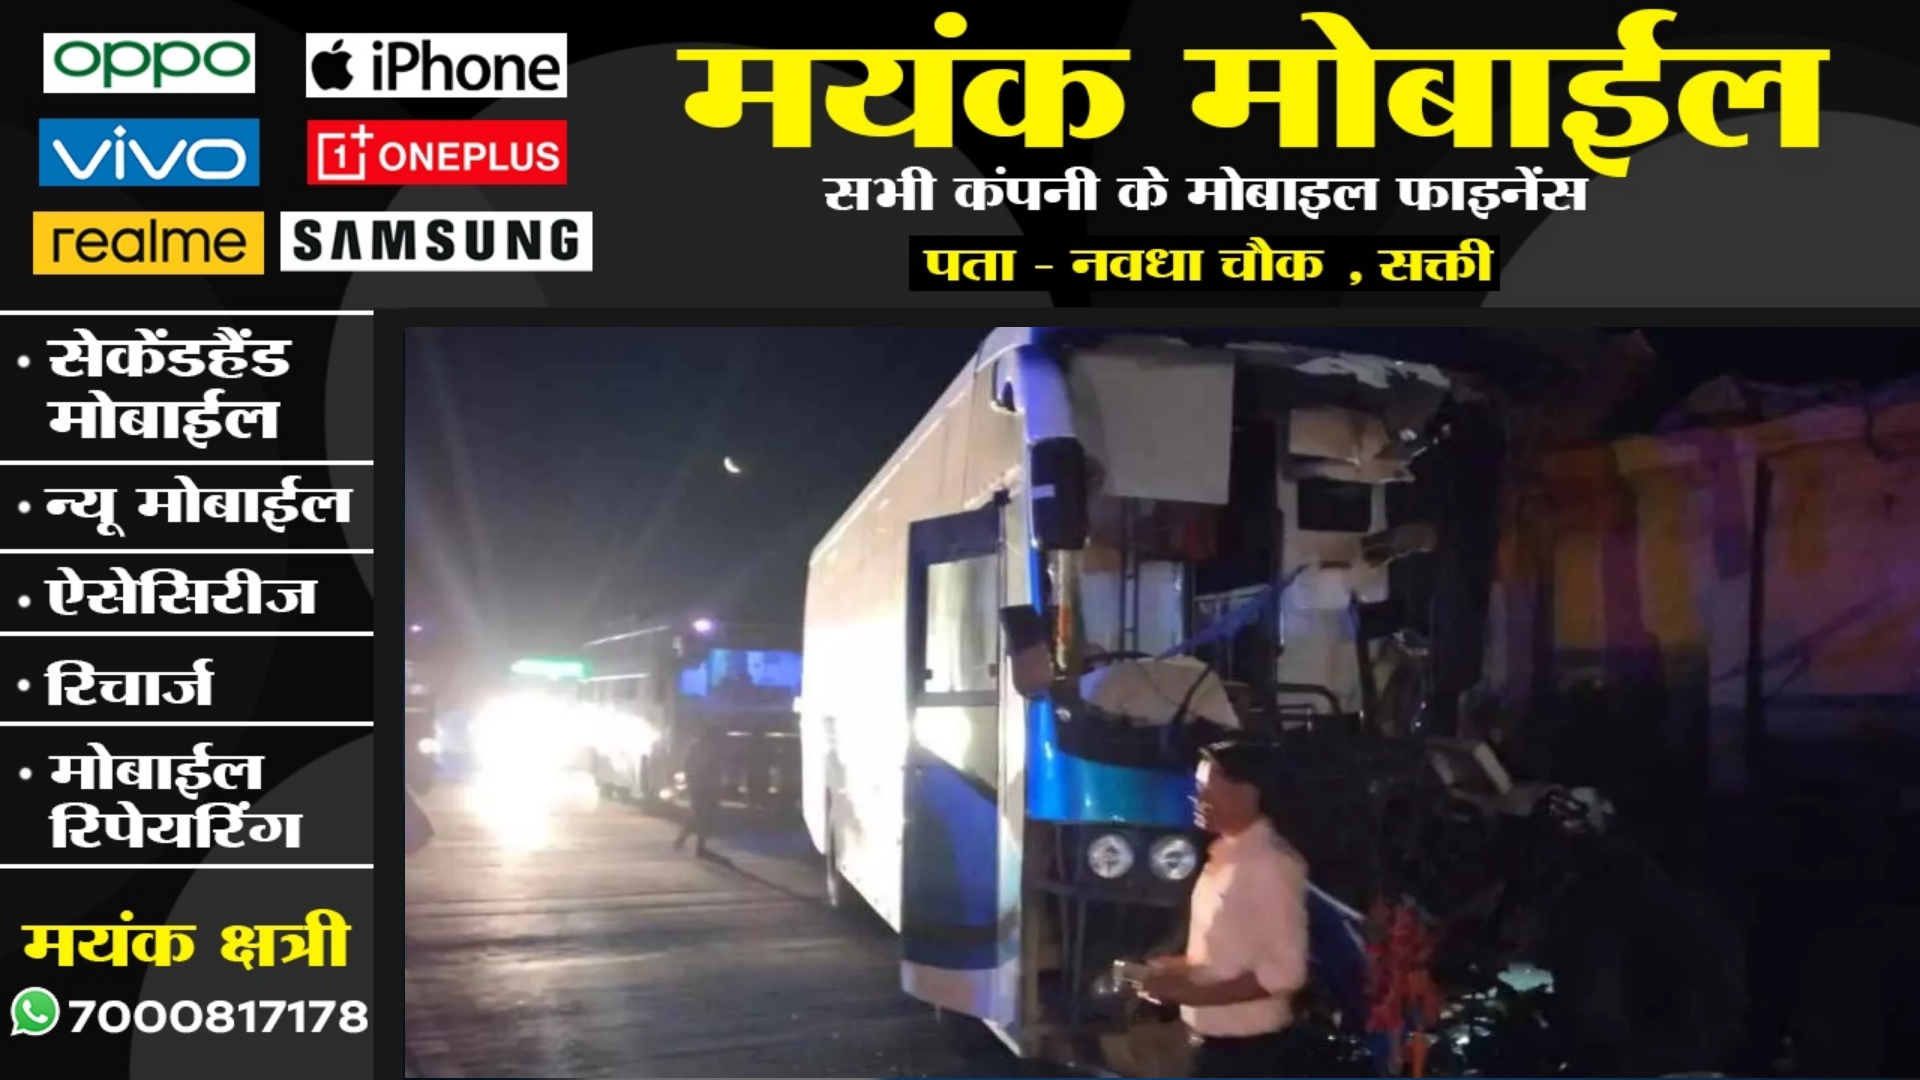 अम्बिकापुर से आ रही रॉयल बस हादसे का शिकार , 15 से अधिक यात्री घायल , 07 की हालत नाजुक